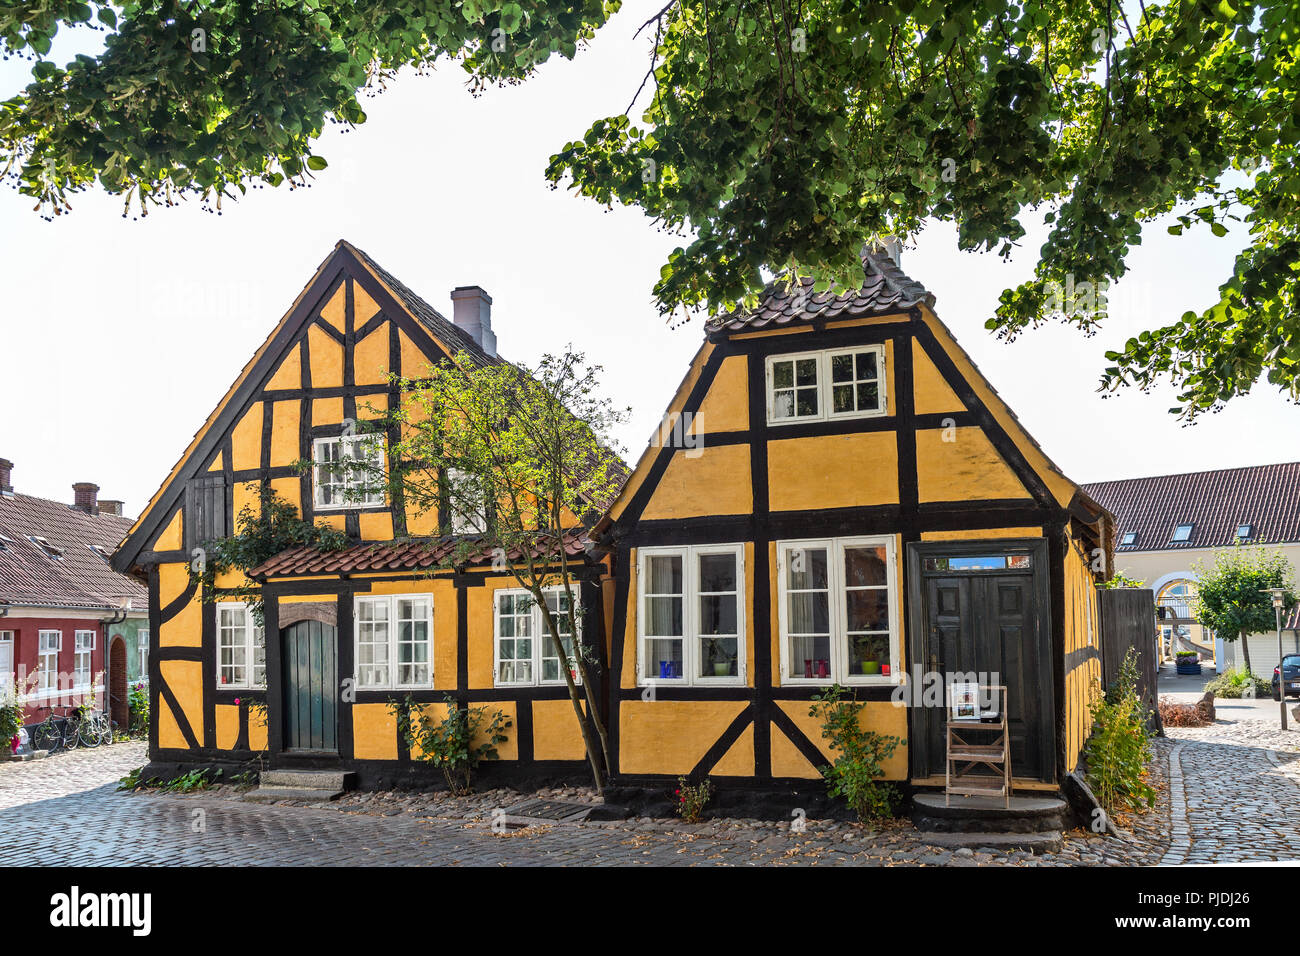 Construido tradicional casa colorida, Faaborg Foto de stock